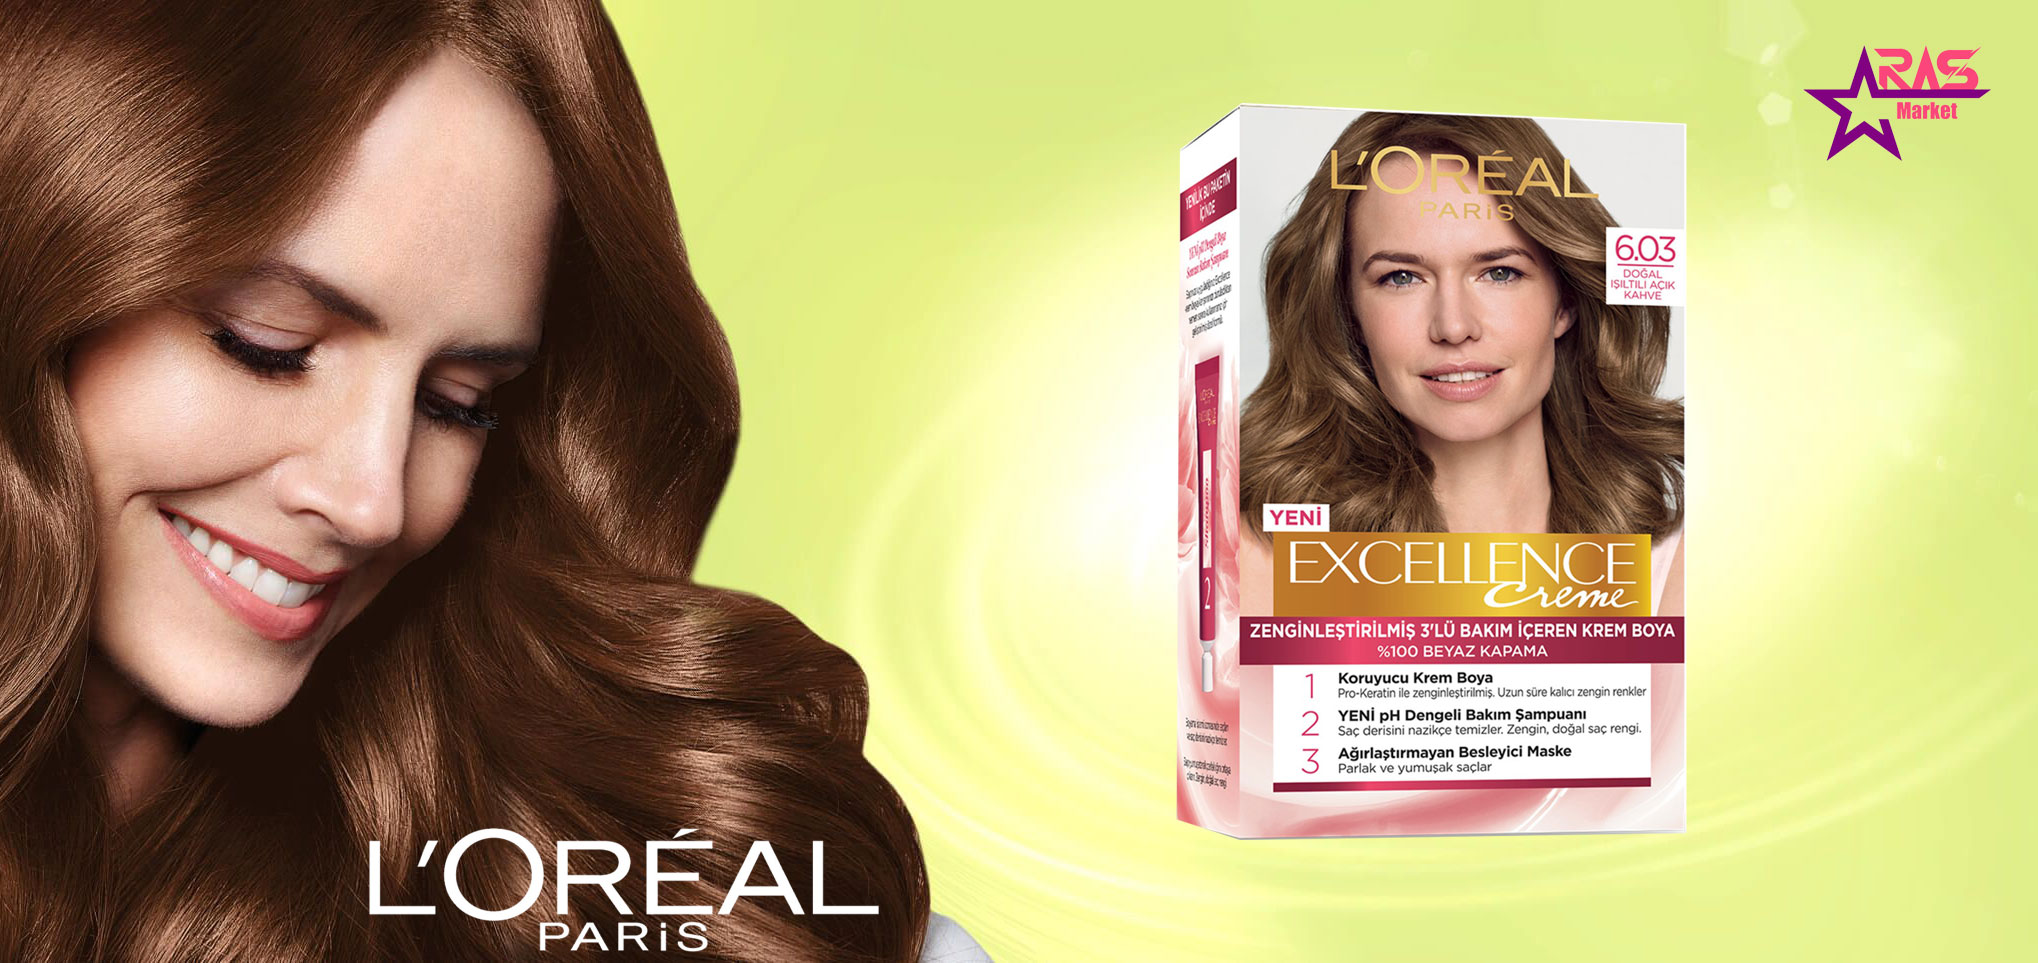 کیت رنگ مو لورآل سری Excellence شماره 6.03 ، خرید اینترنتی محصولات شوینده و بهداشتی ، بهداشت بانوان ، ارس مارکت